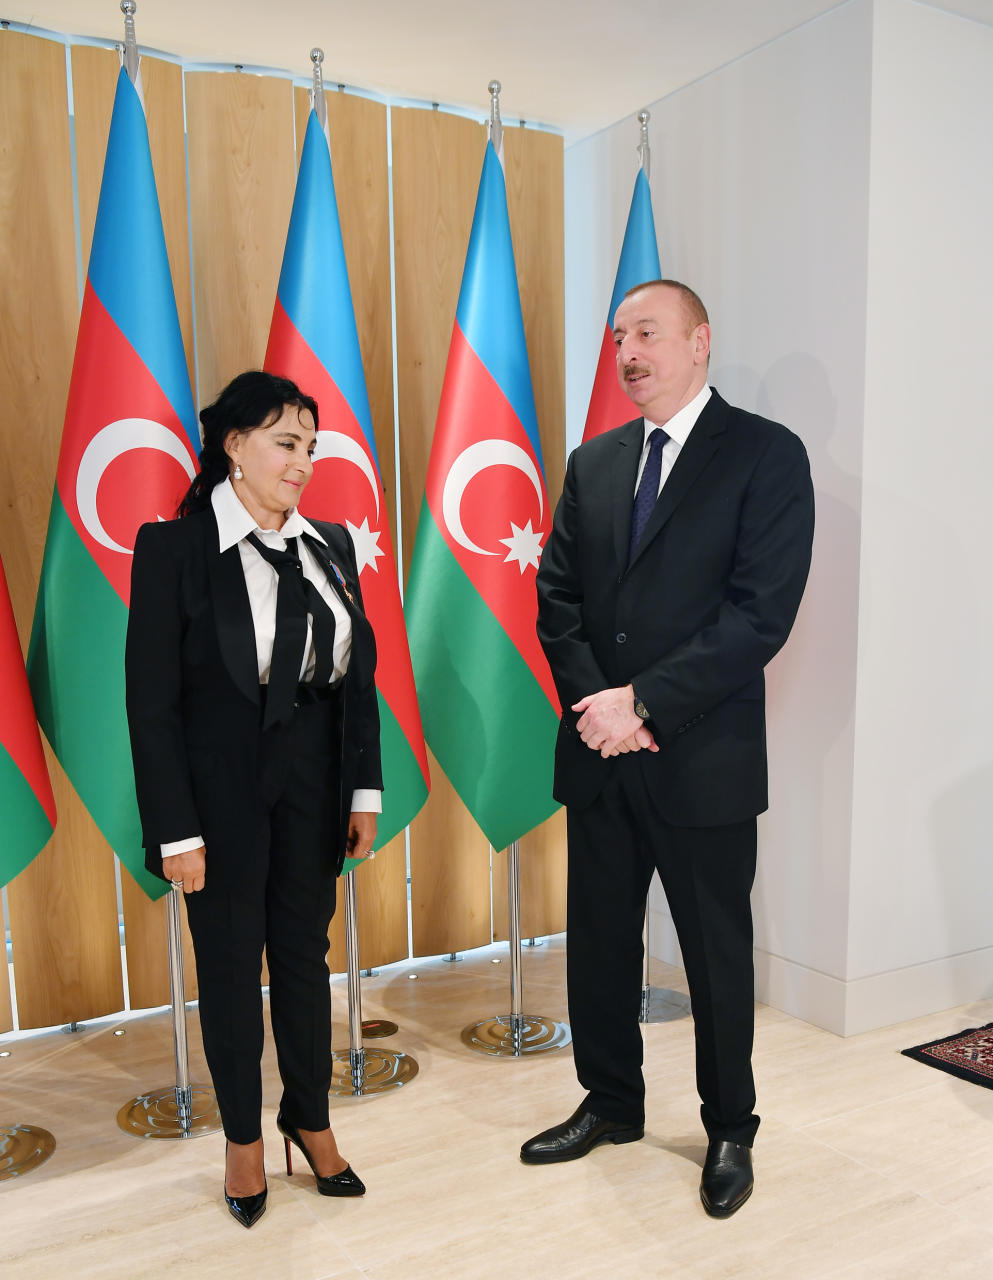 Президент Ильхам Алиев и Первая леди Мехрибан Алиева встретились с Ириной Винер-Усмановой